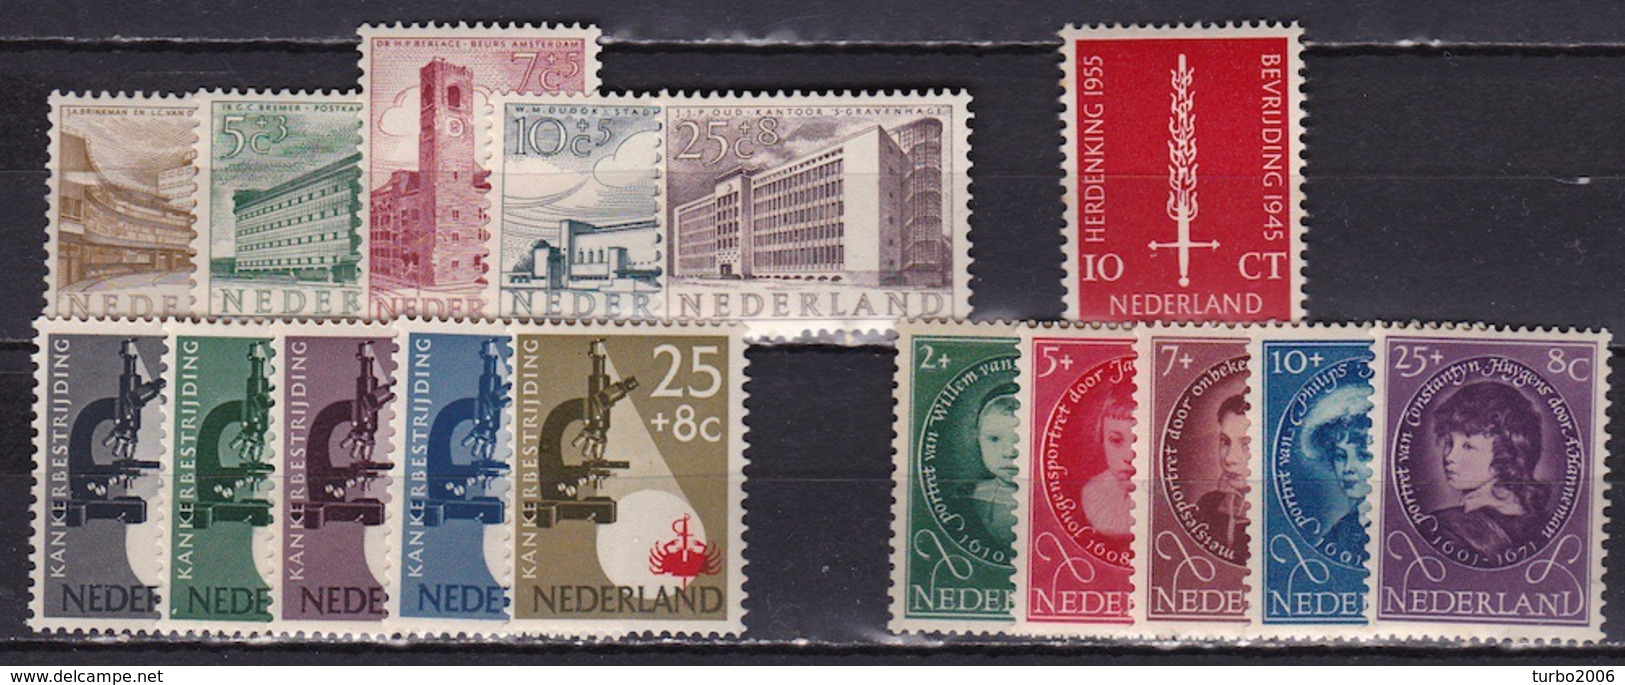 1955 Complete Jaargang Postfris NVPH 655 / 670 - Années Complètes